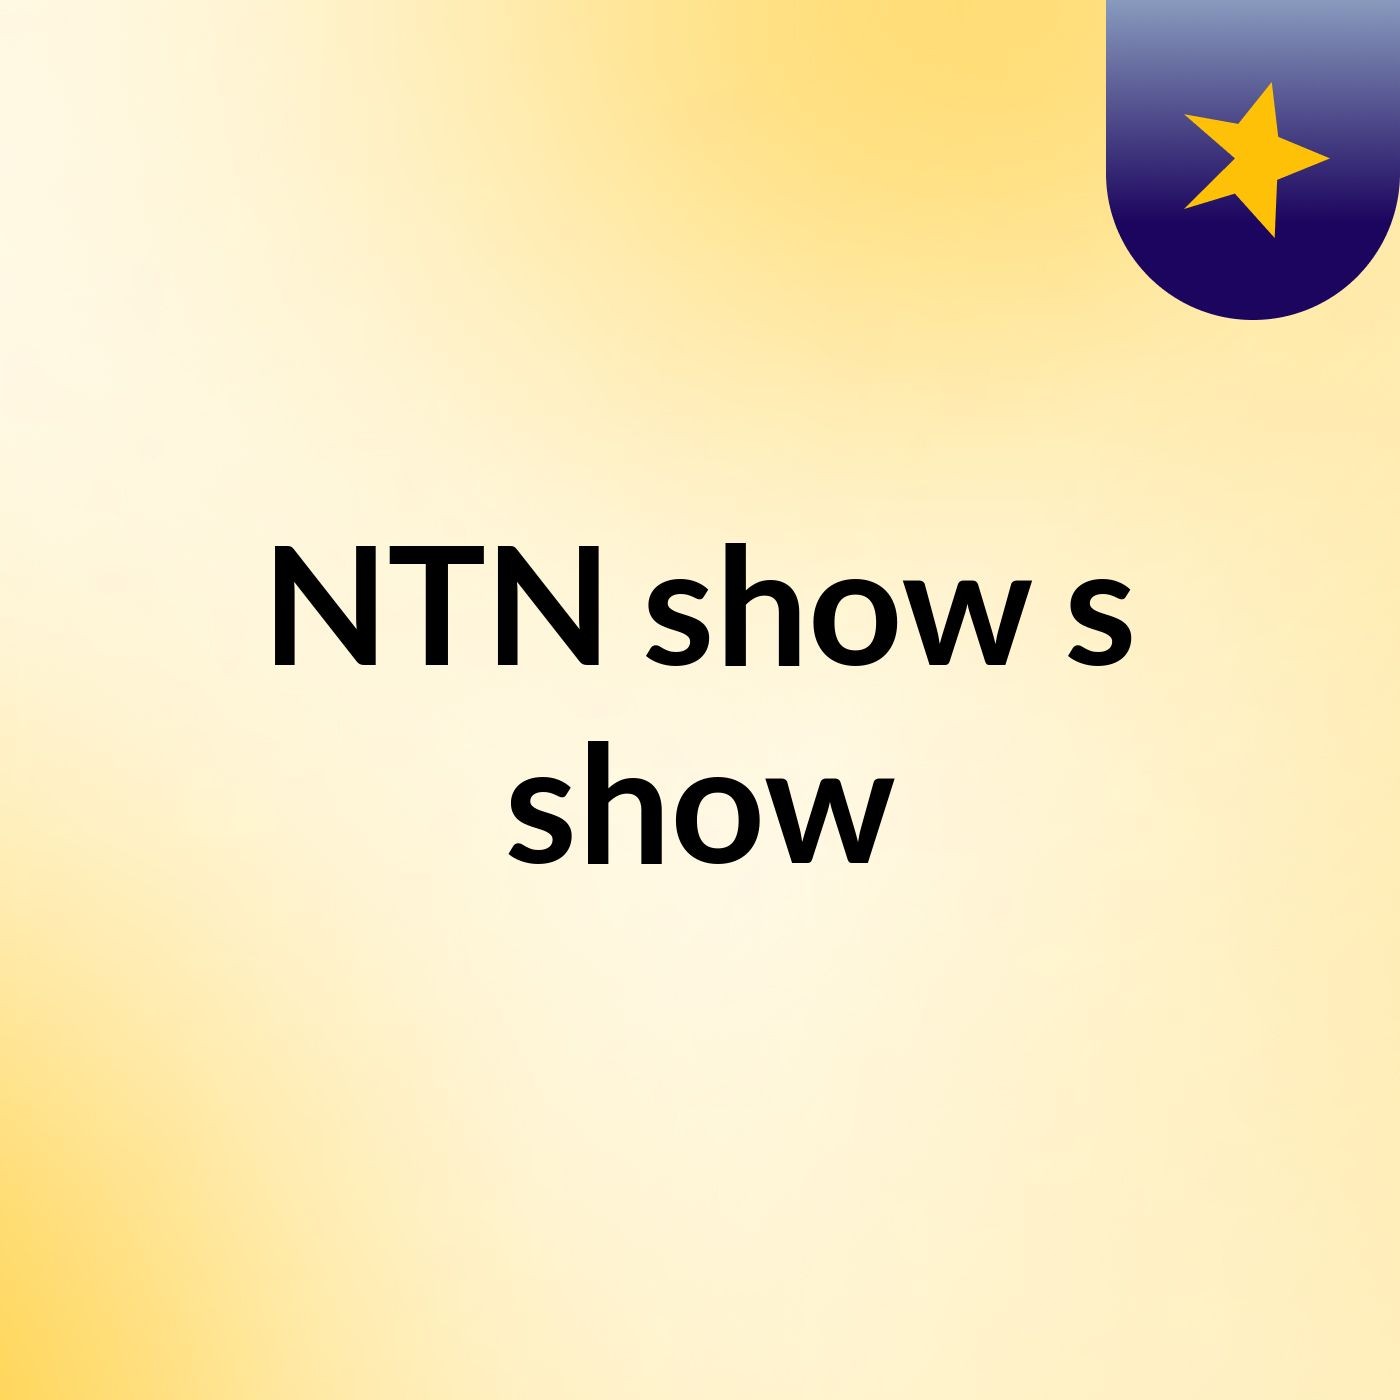 NTN show's show